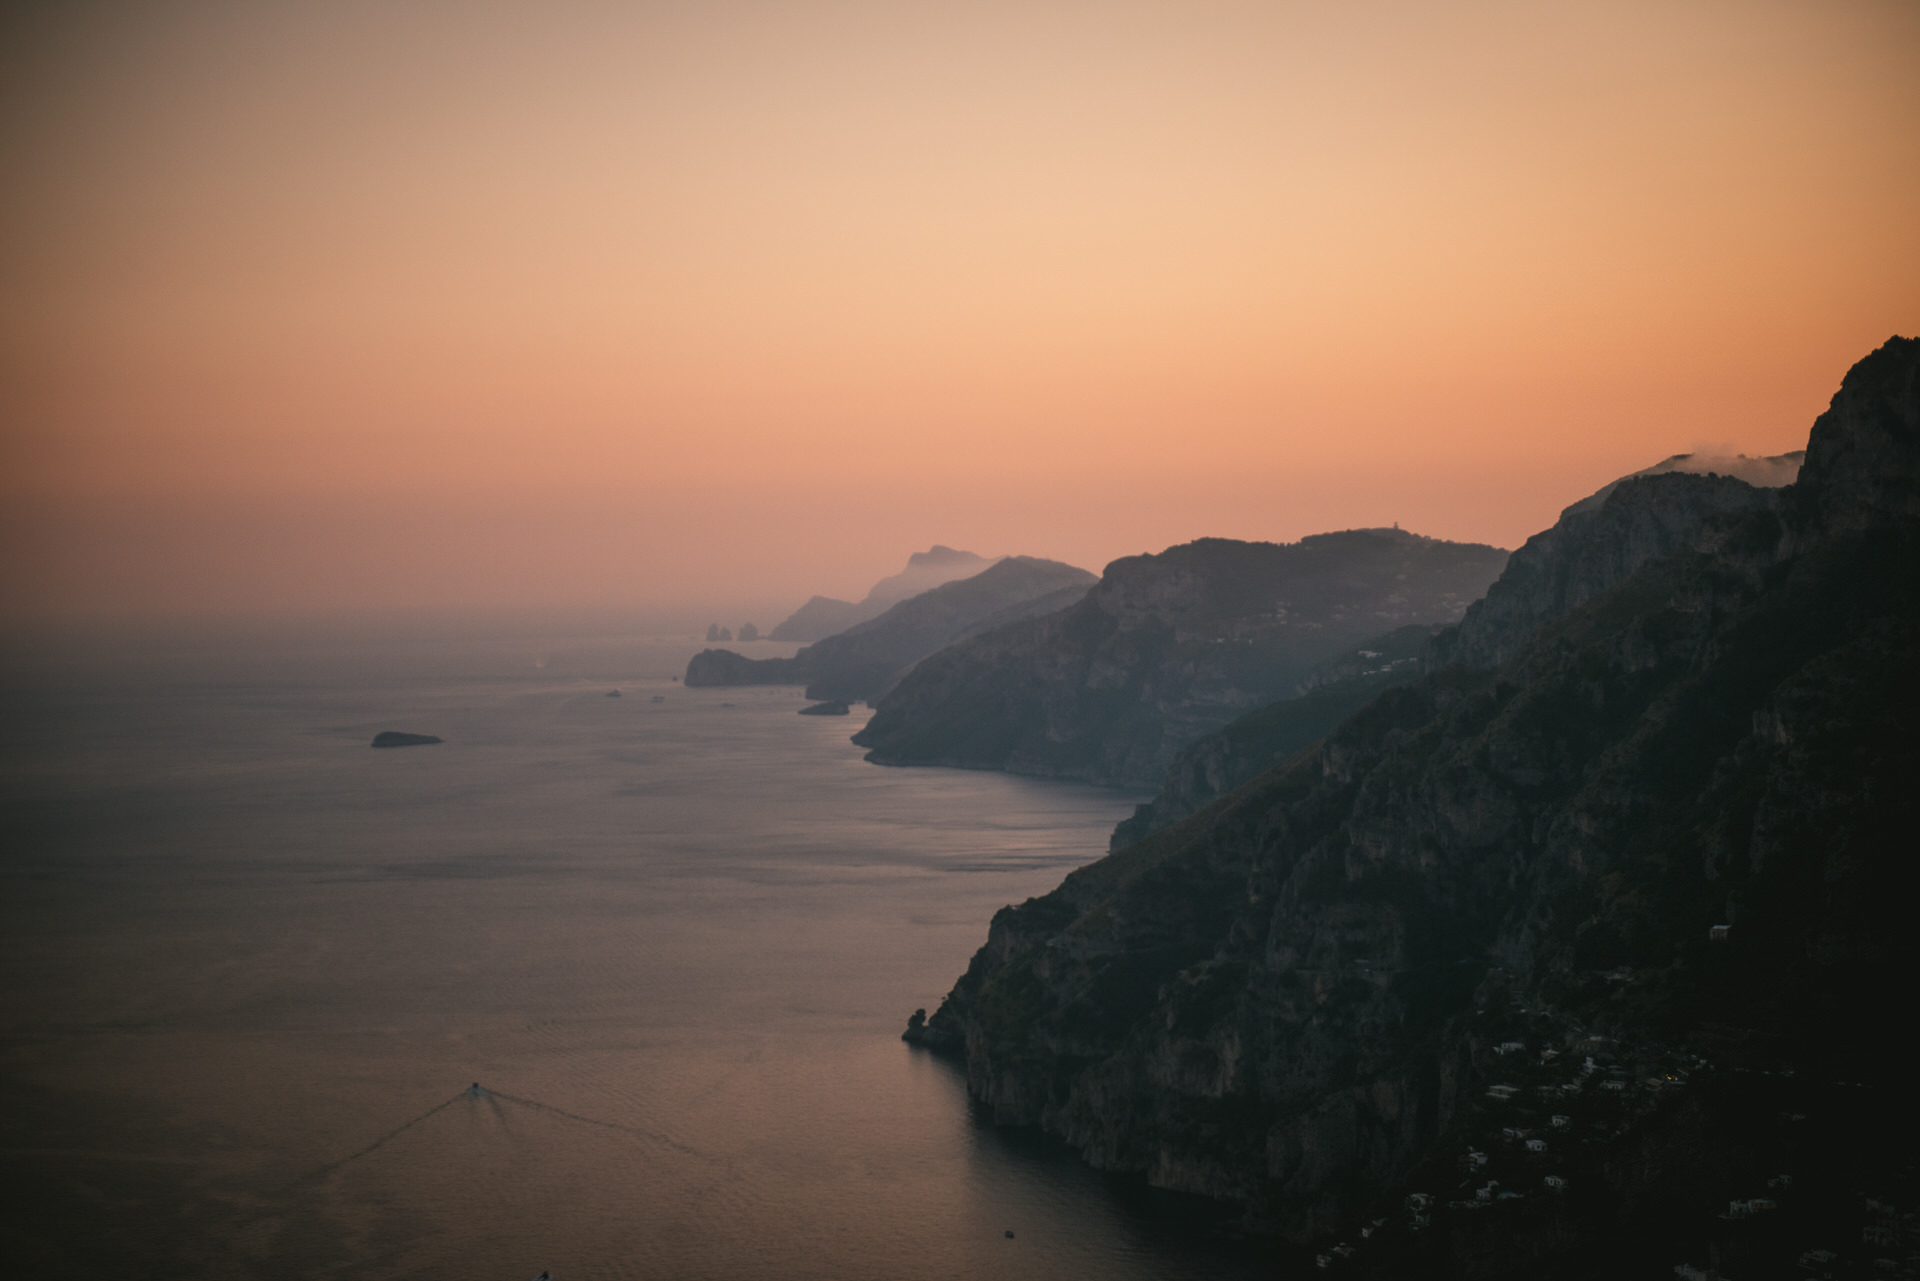 The Amalfi Coast at sunset